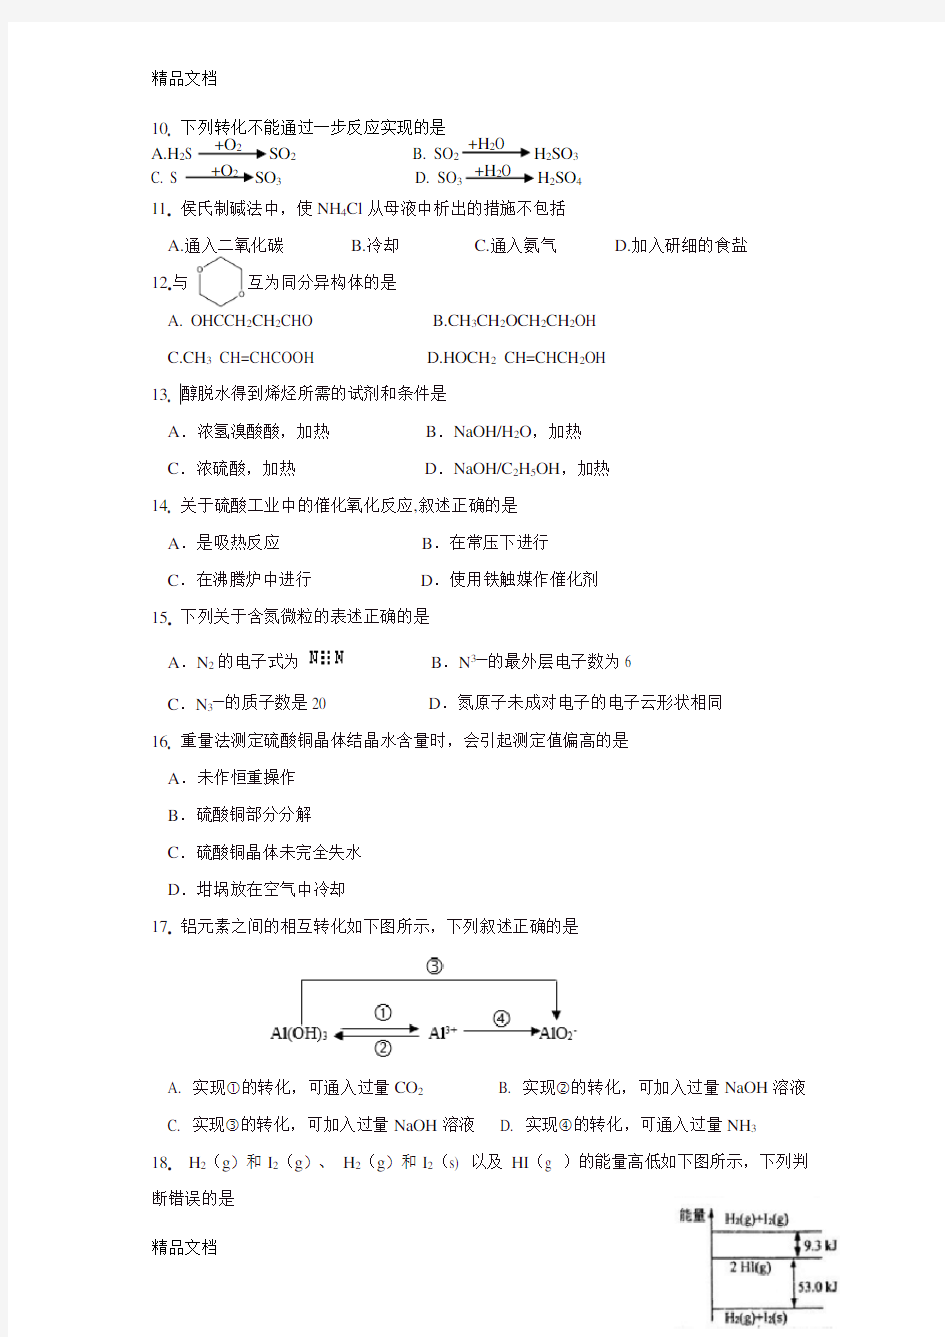 2018年上海市高中化学等级考试卷教学内容